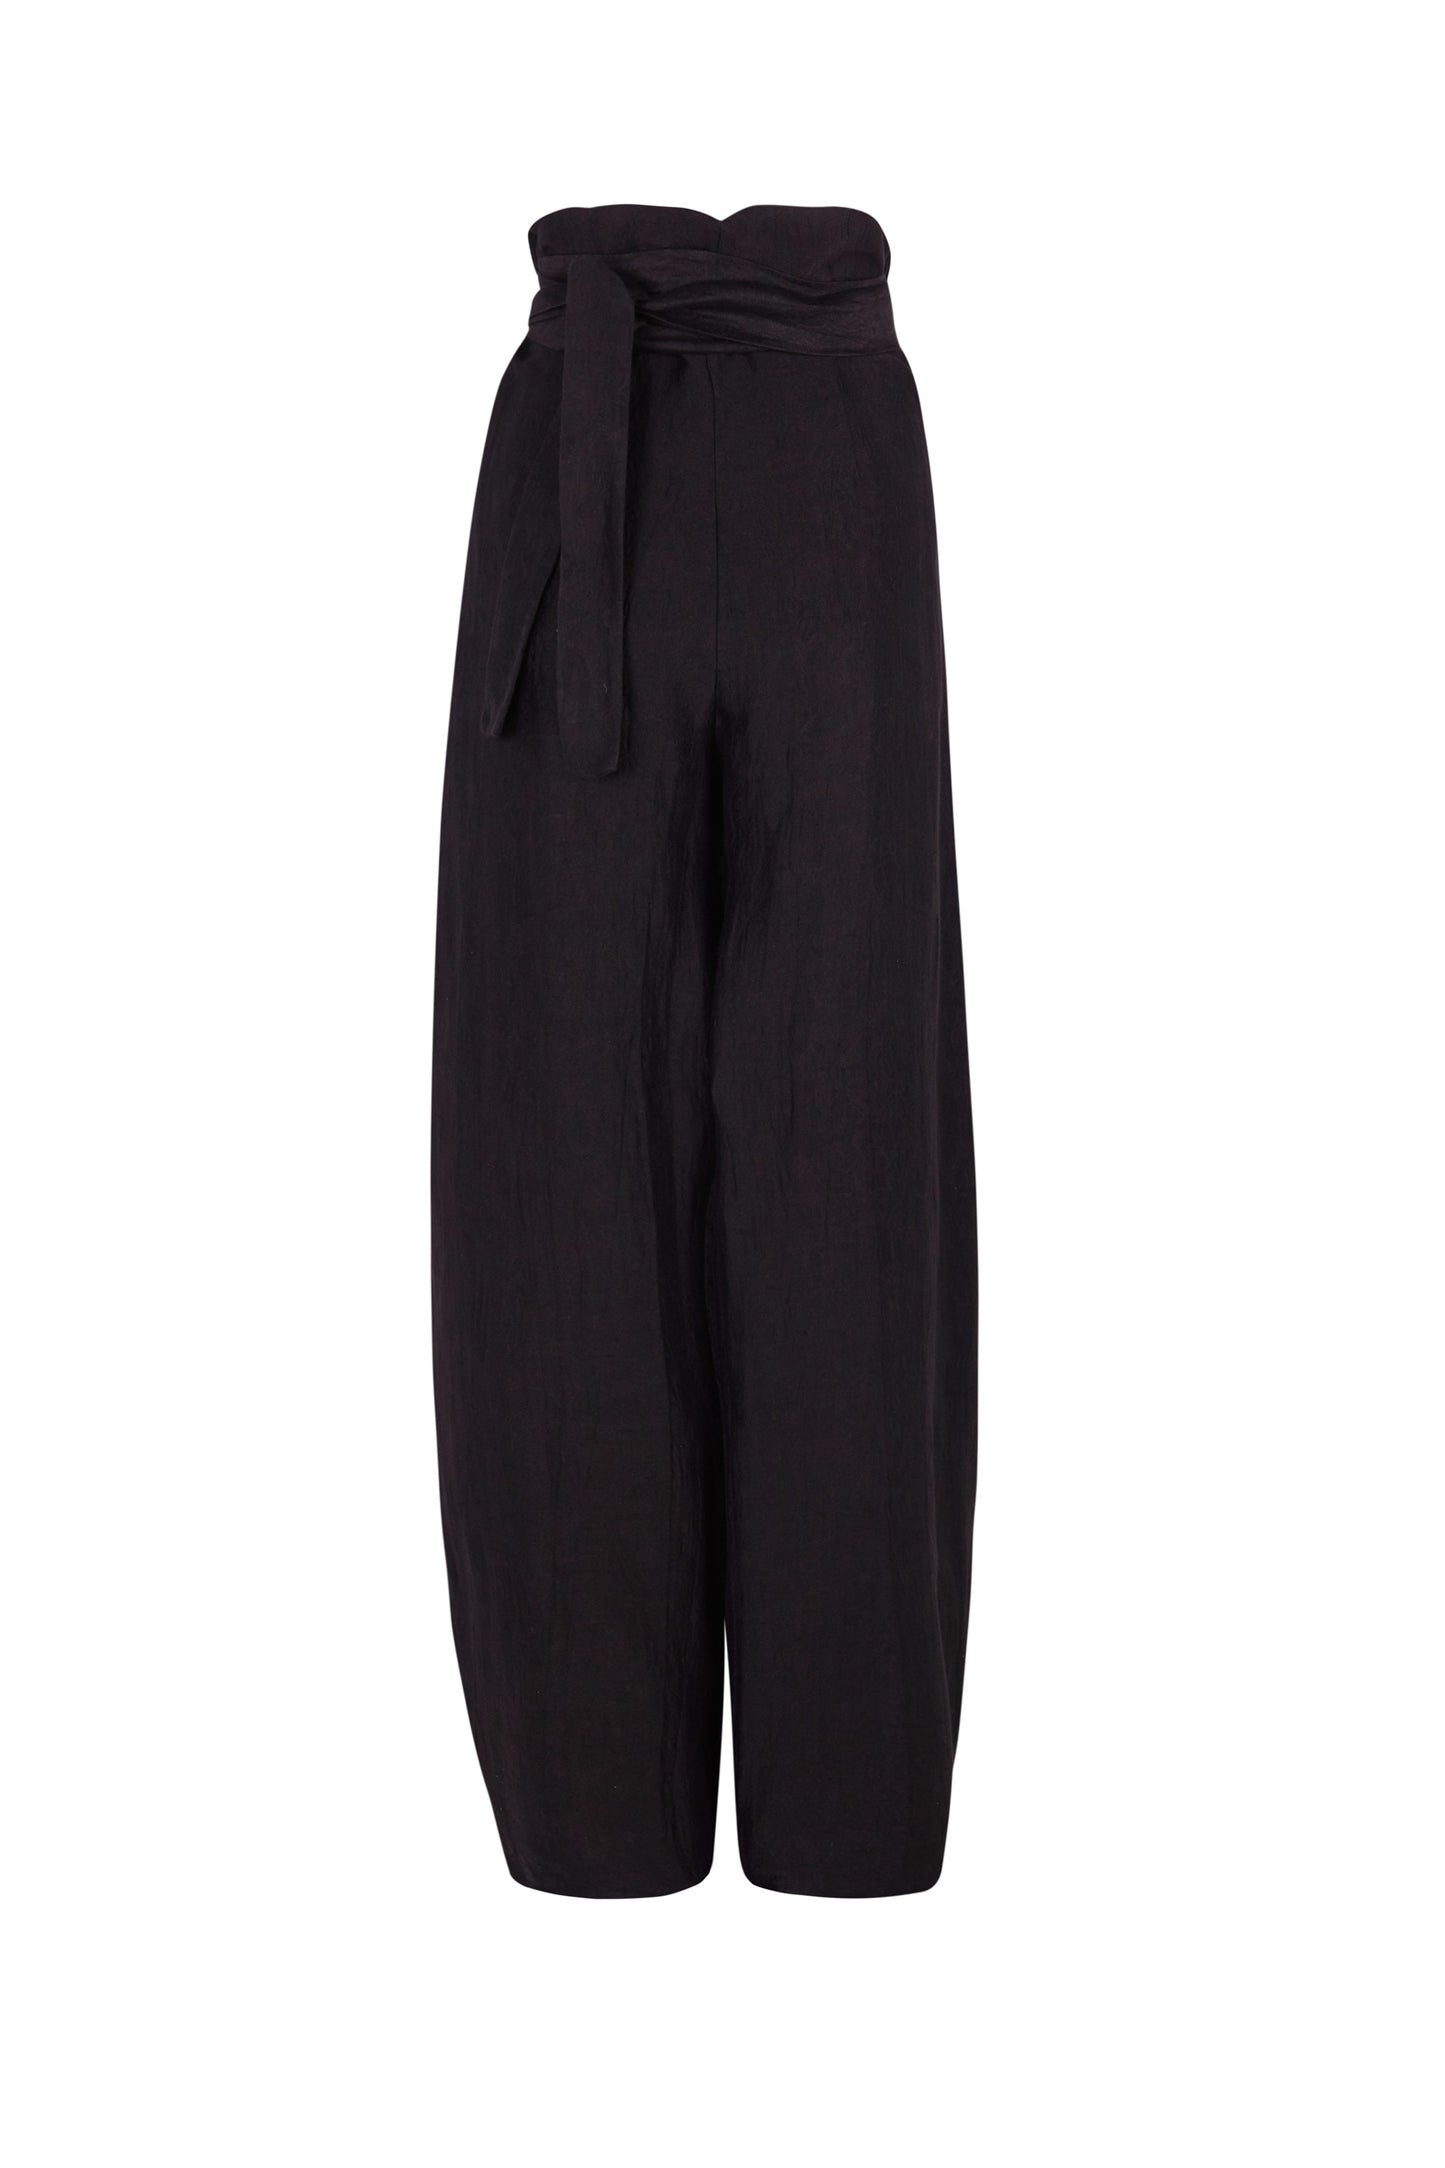 Bachata, black linen and silk pants